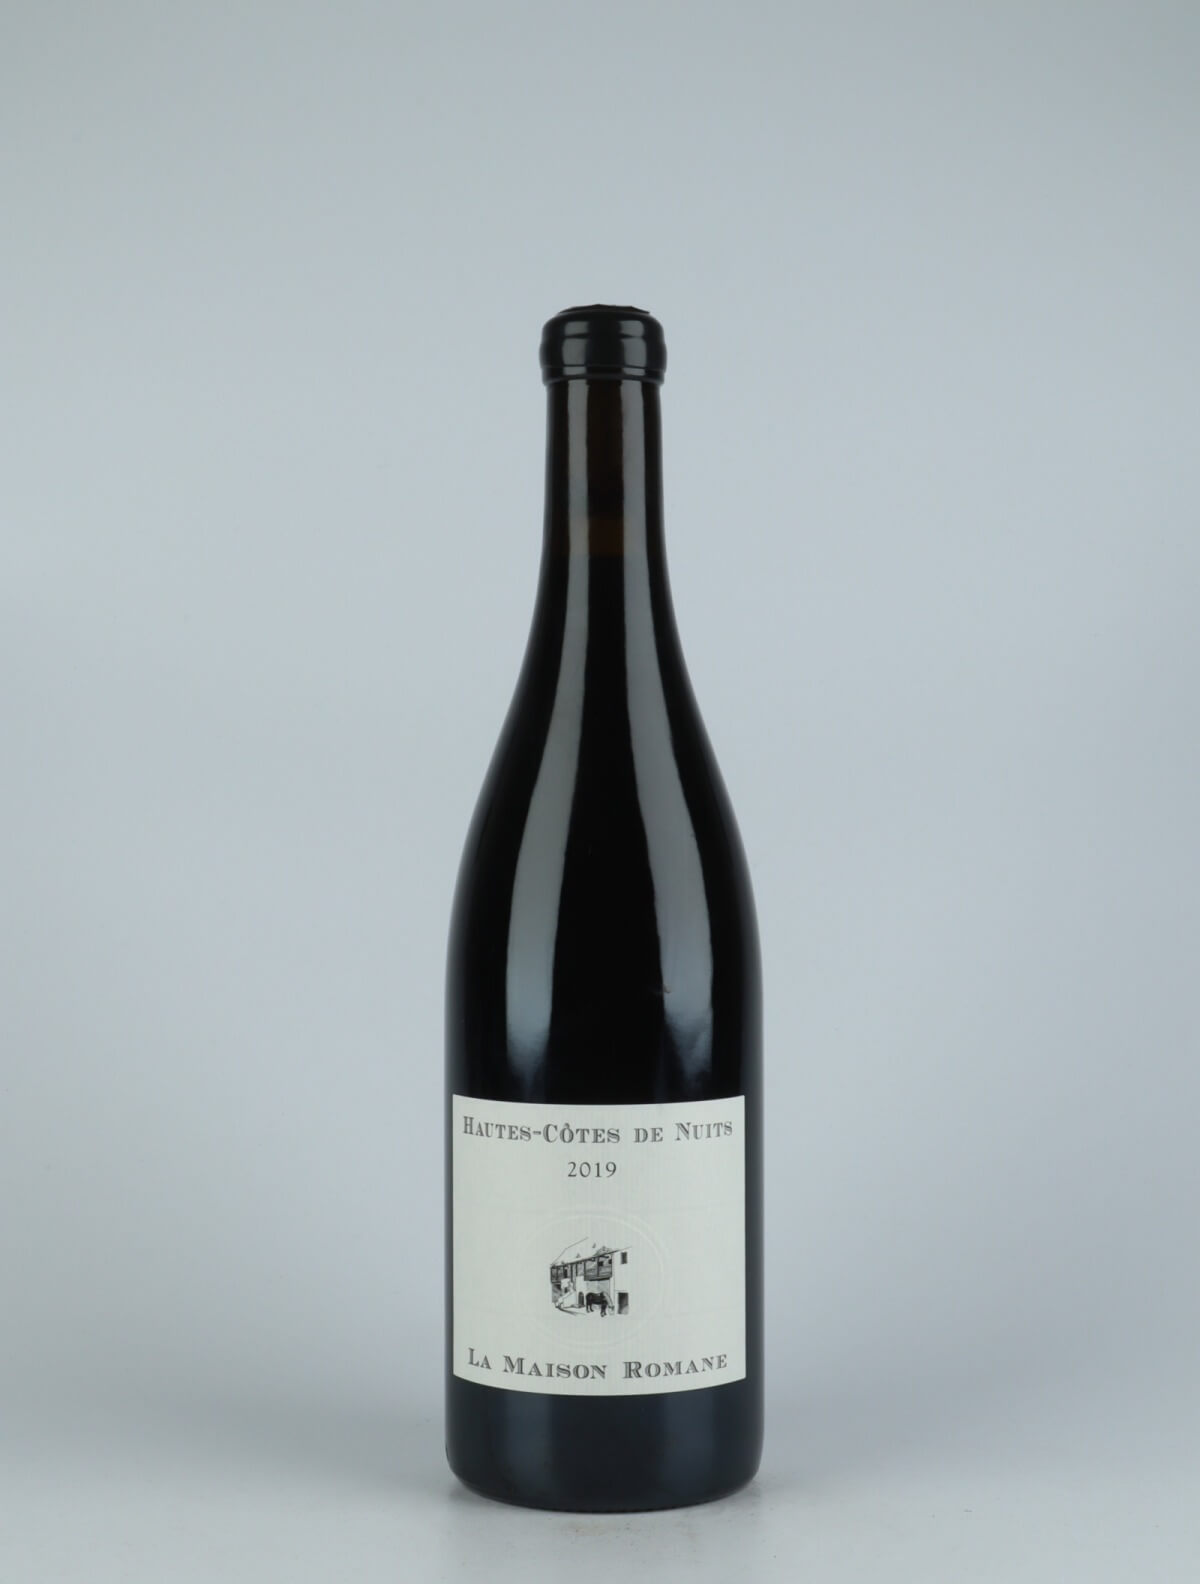 A bottle 2019 Hautes Côtes de Nuits Rouge Red wine from La Maison Romane, Burgundy in France